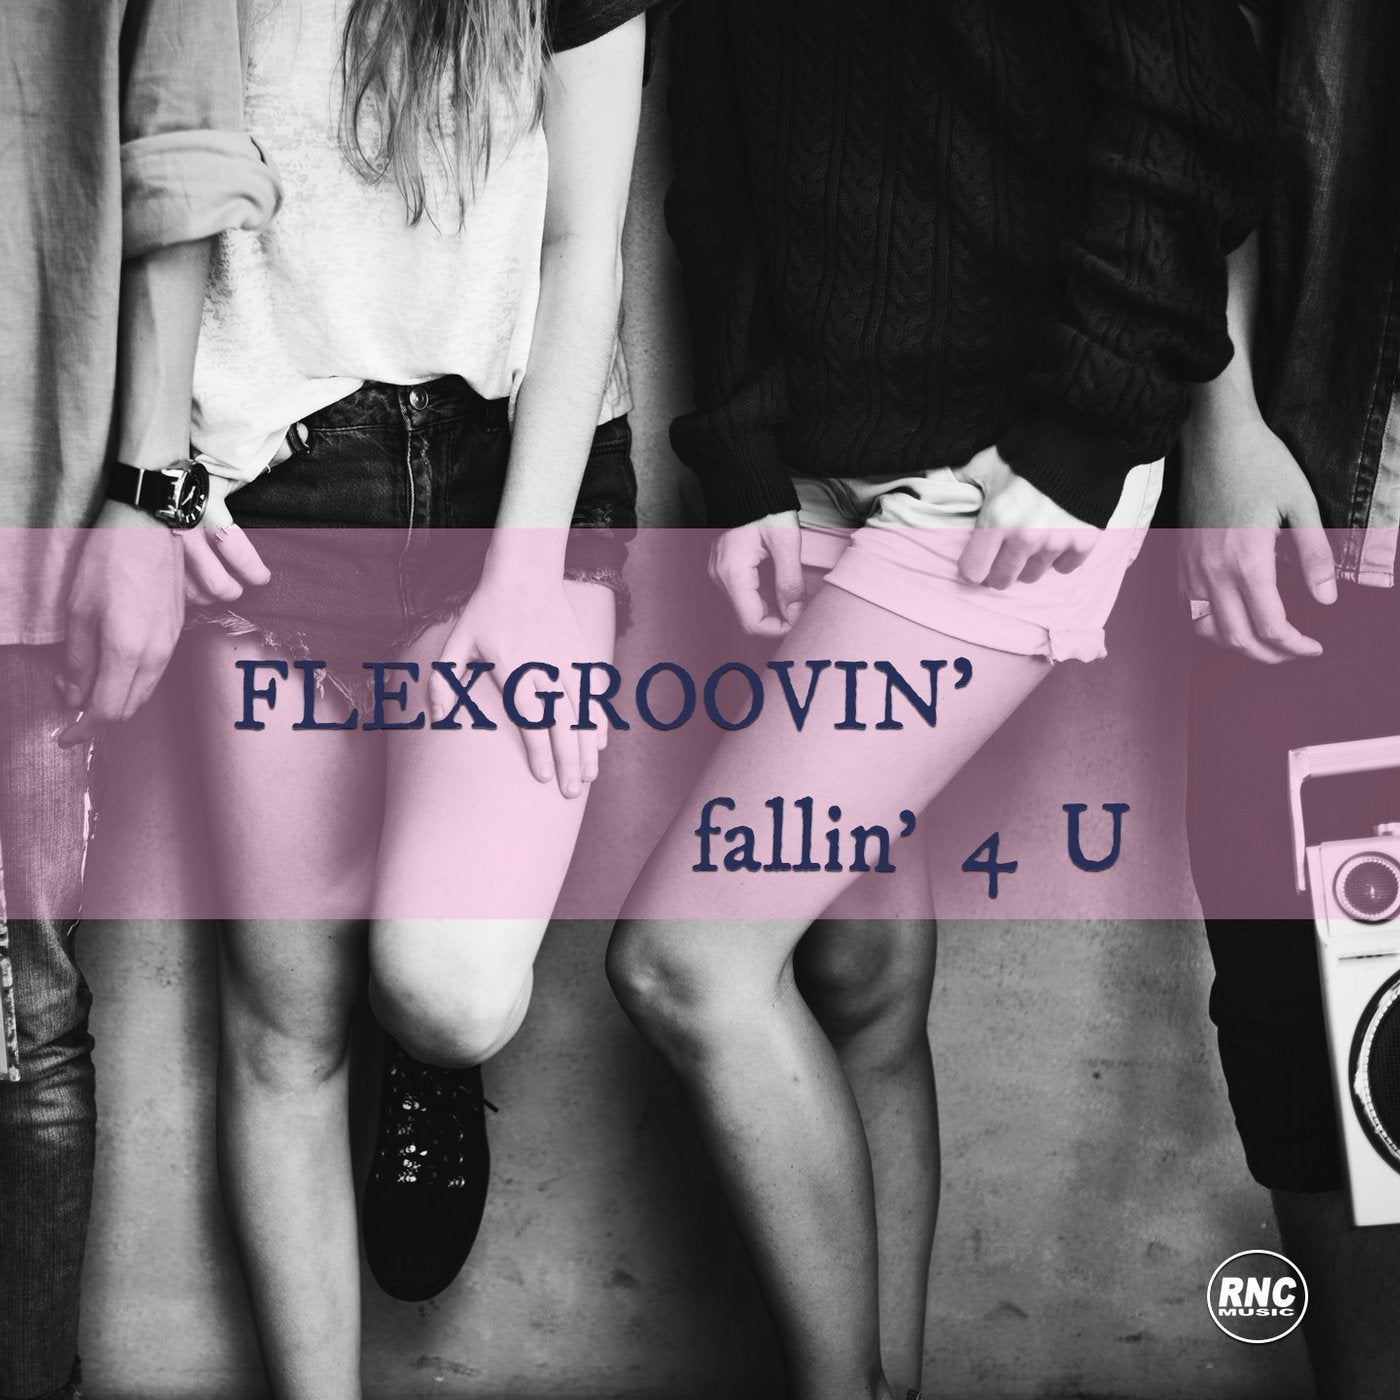 Fallin' 4 U